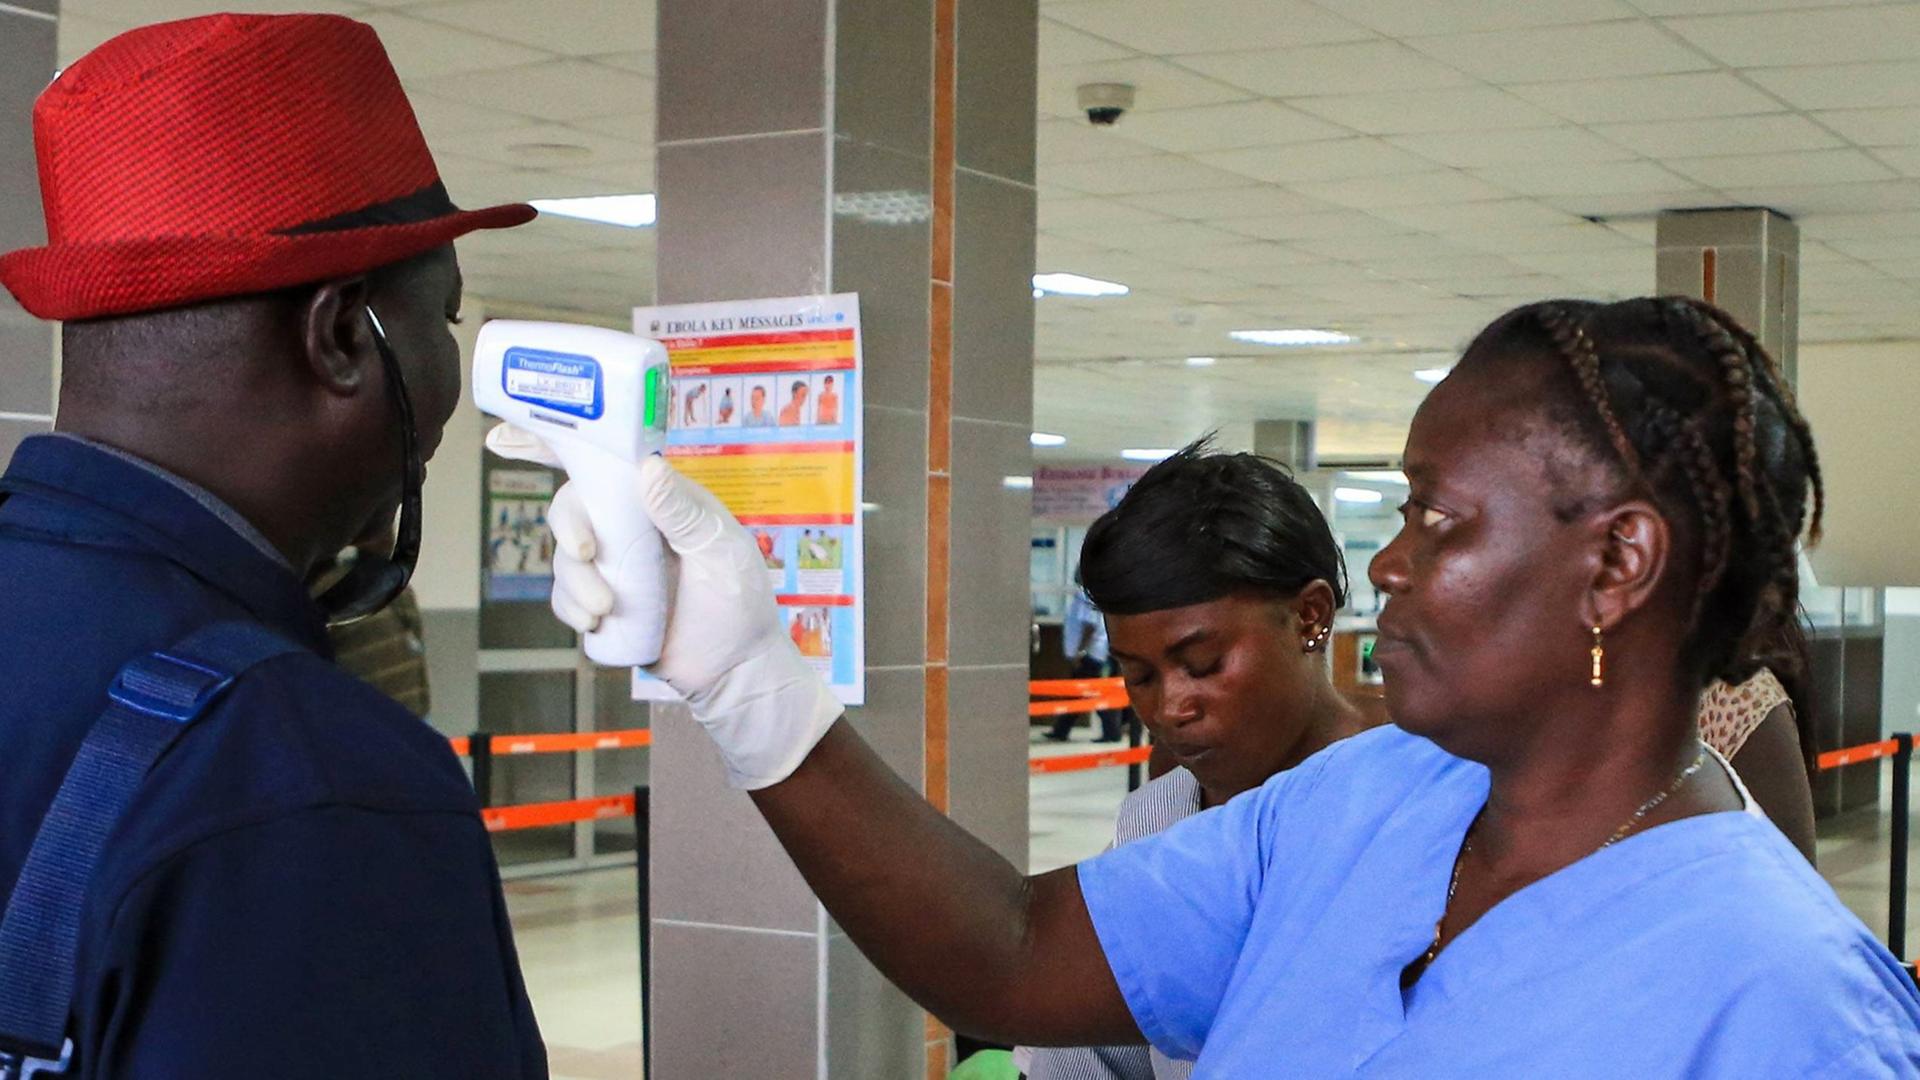 Fiebermessung am Flughafen von Freetown in Sierre Leone - die Gefahr von Ebola ist noch nicht gebannt